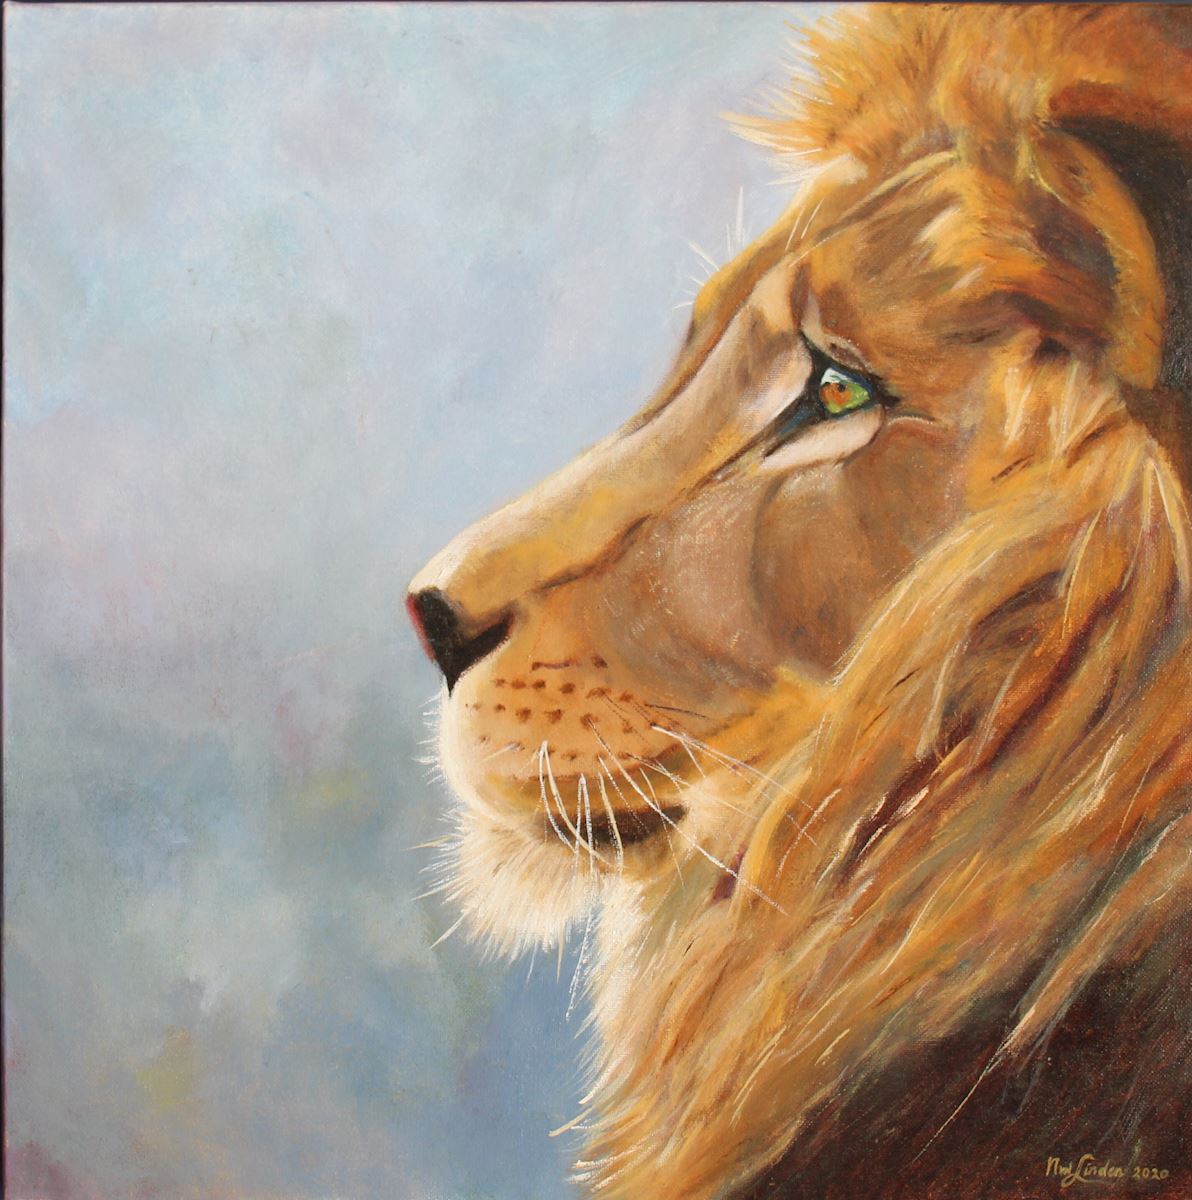 b kunst uit de kast leeuw izu nicole van der linden noordwijk kat lion leo dierentuin zoo kunst uit de kast schilderij dieren